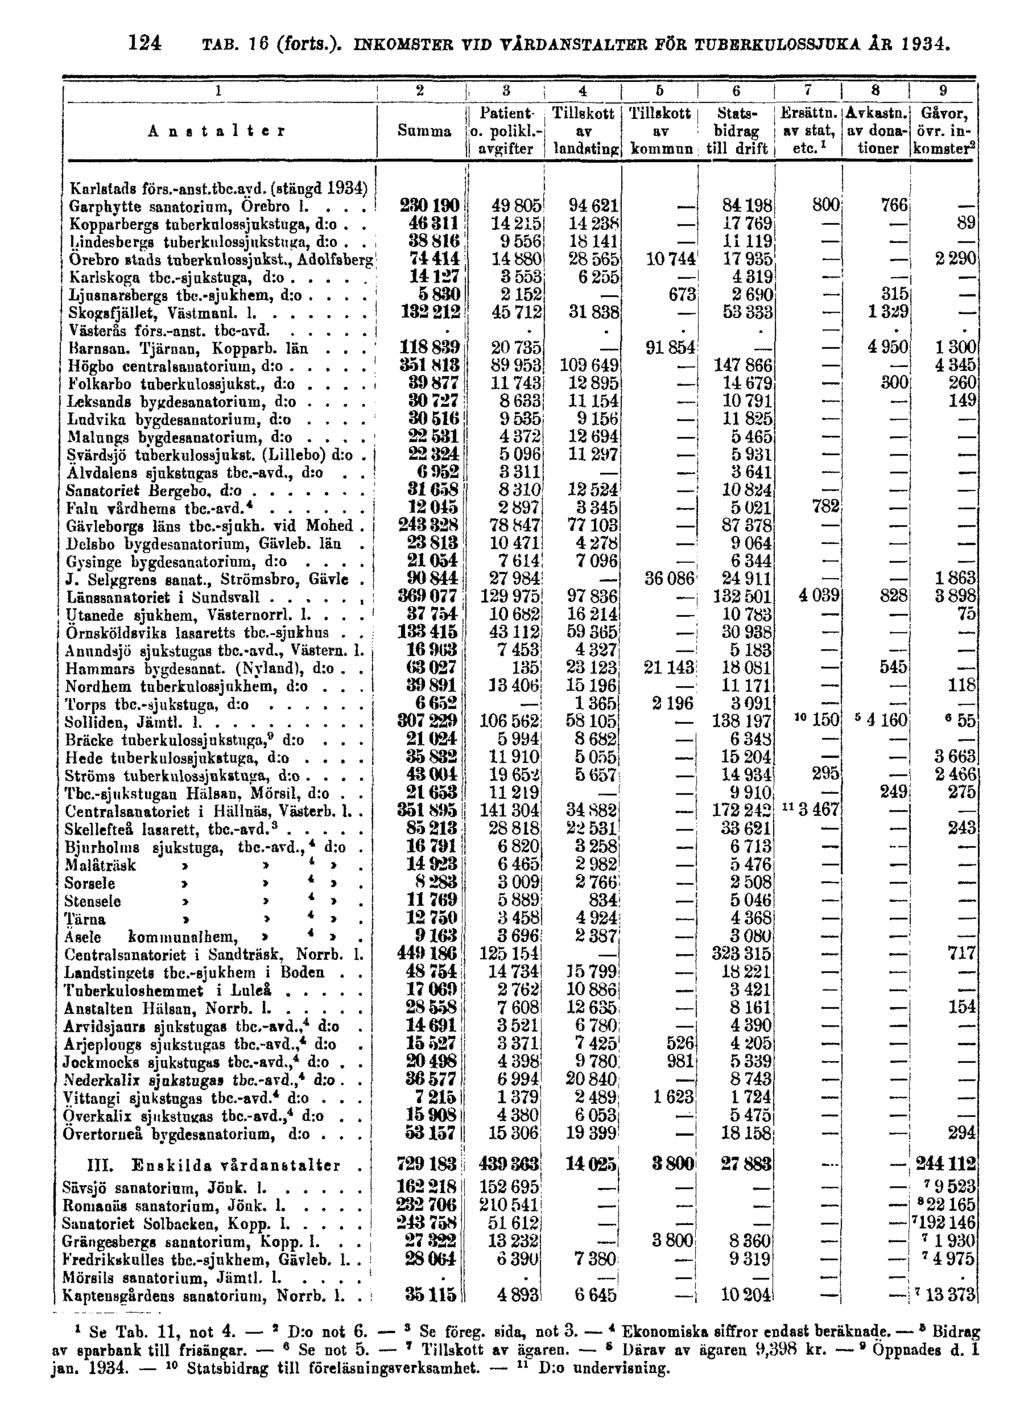 124 TAB. 16 (forts.). INKOMSTER VID VÅRDANSTALTER FÖR TUBERKULOSSJUKA ÅR 1934. 1 Se Tab. 11, not 4. 2 D:o not 6. 3 Se föreg. sida, not 3. 4 Ekonomiska siffror endast beräknade.